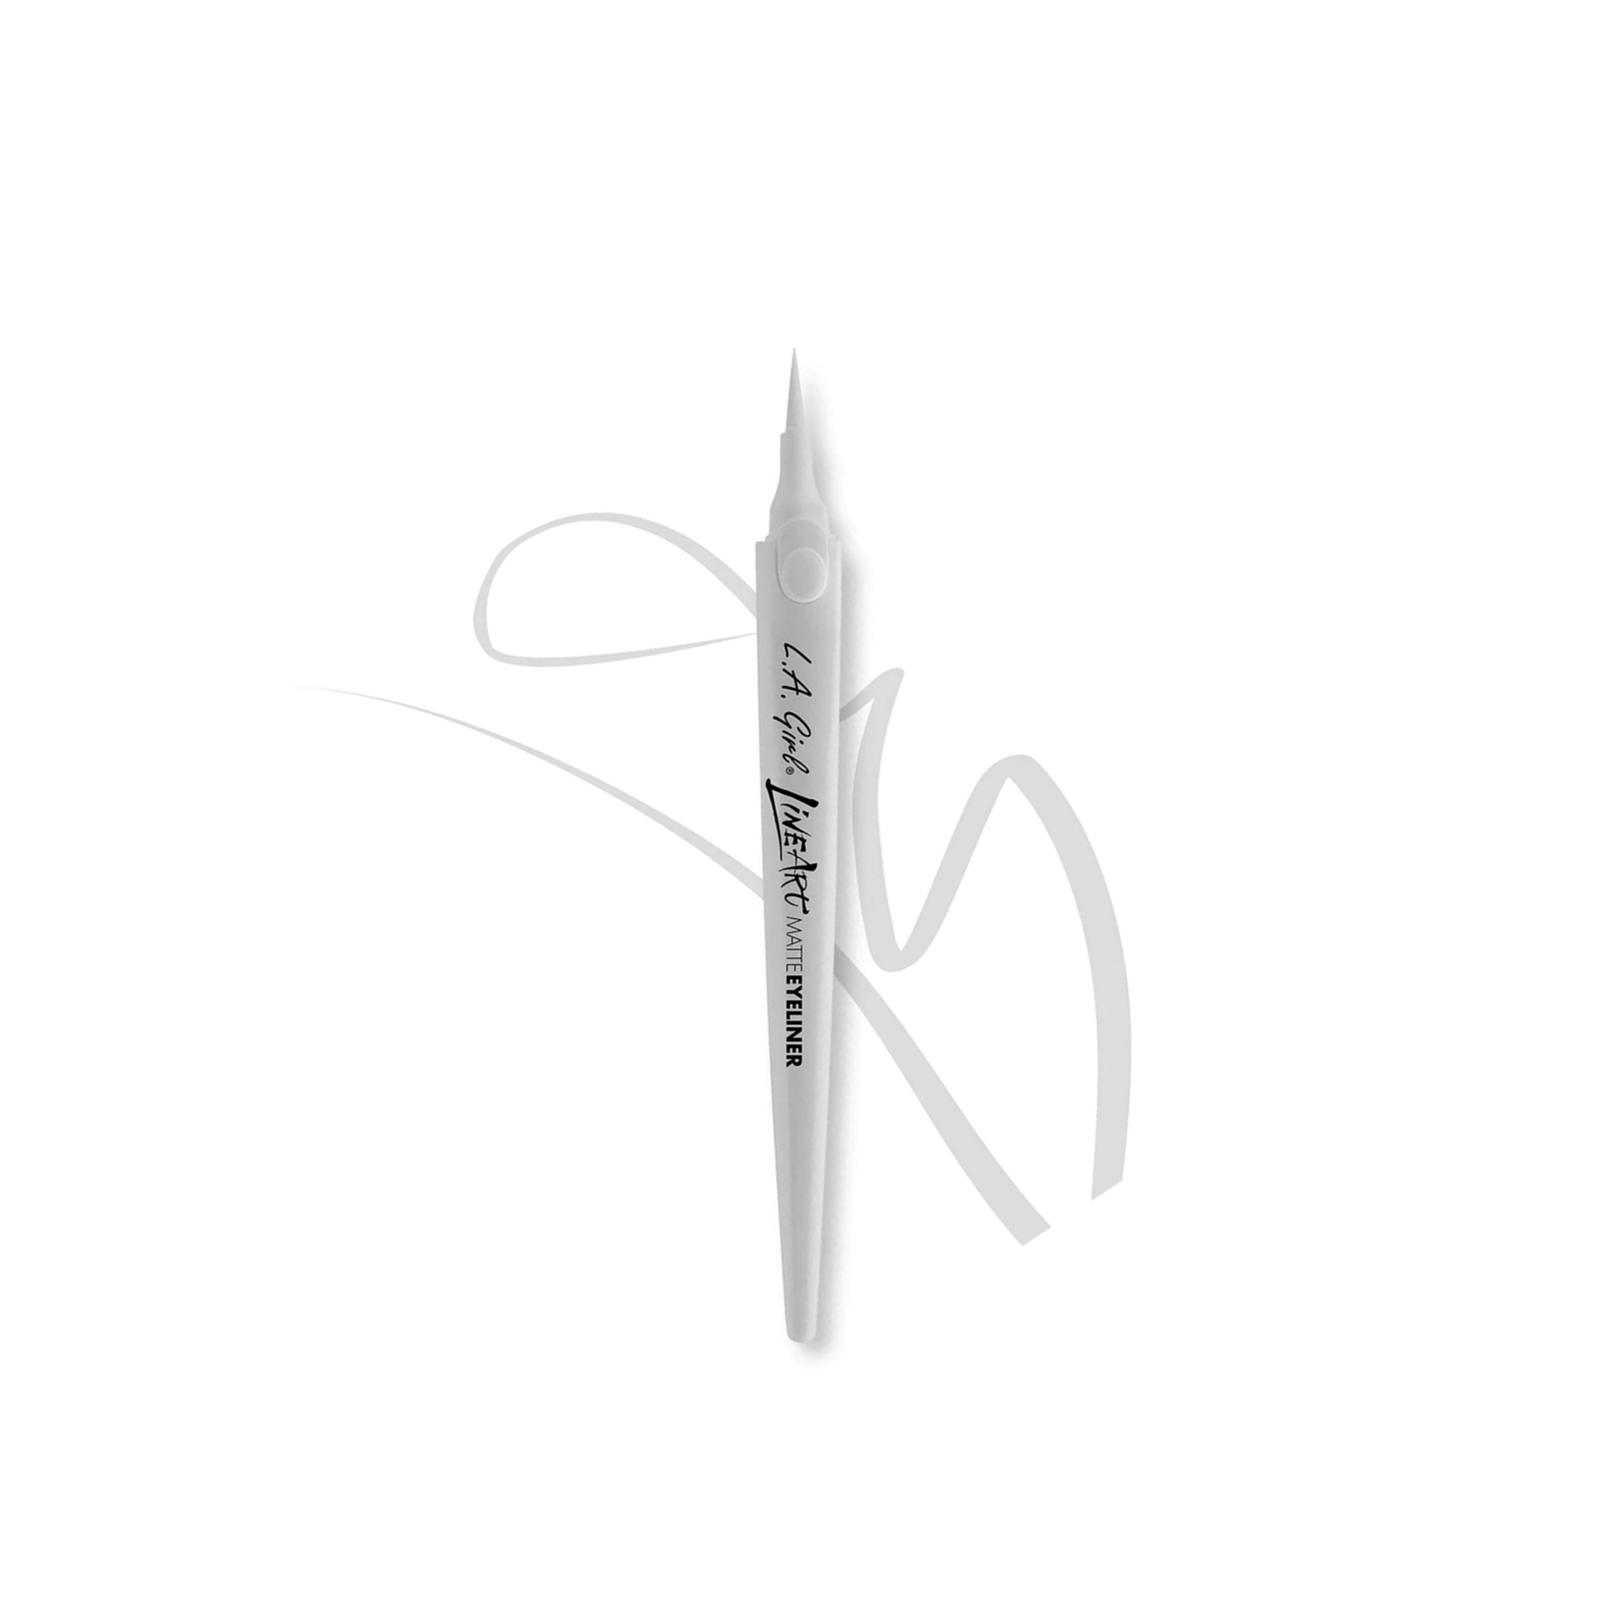 L.A. Girl Line Art Matte Eyeliner Pen Pure White 0.4ml (0.014 fl oz)